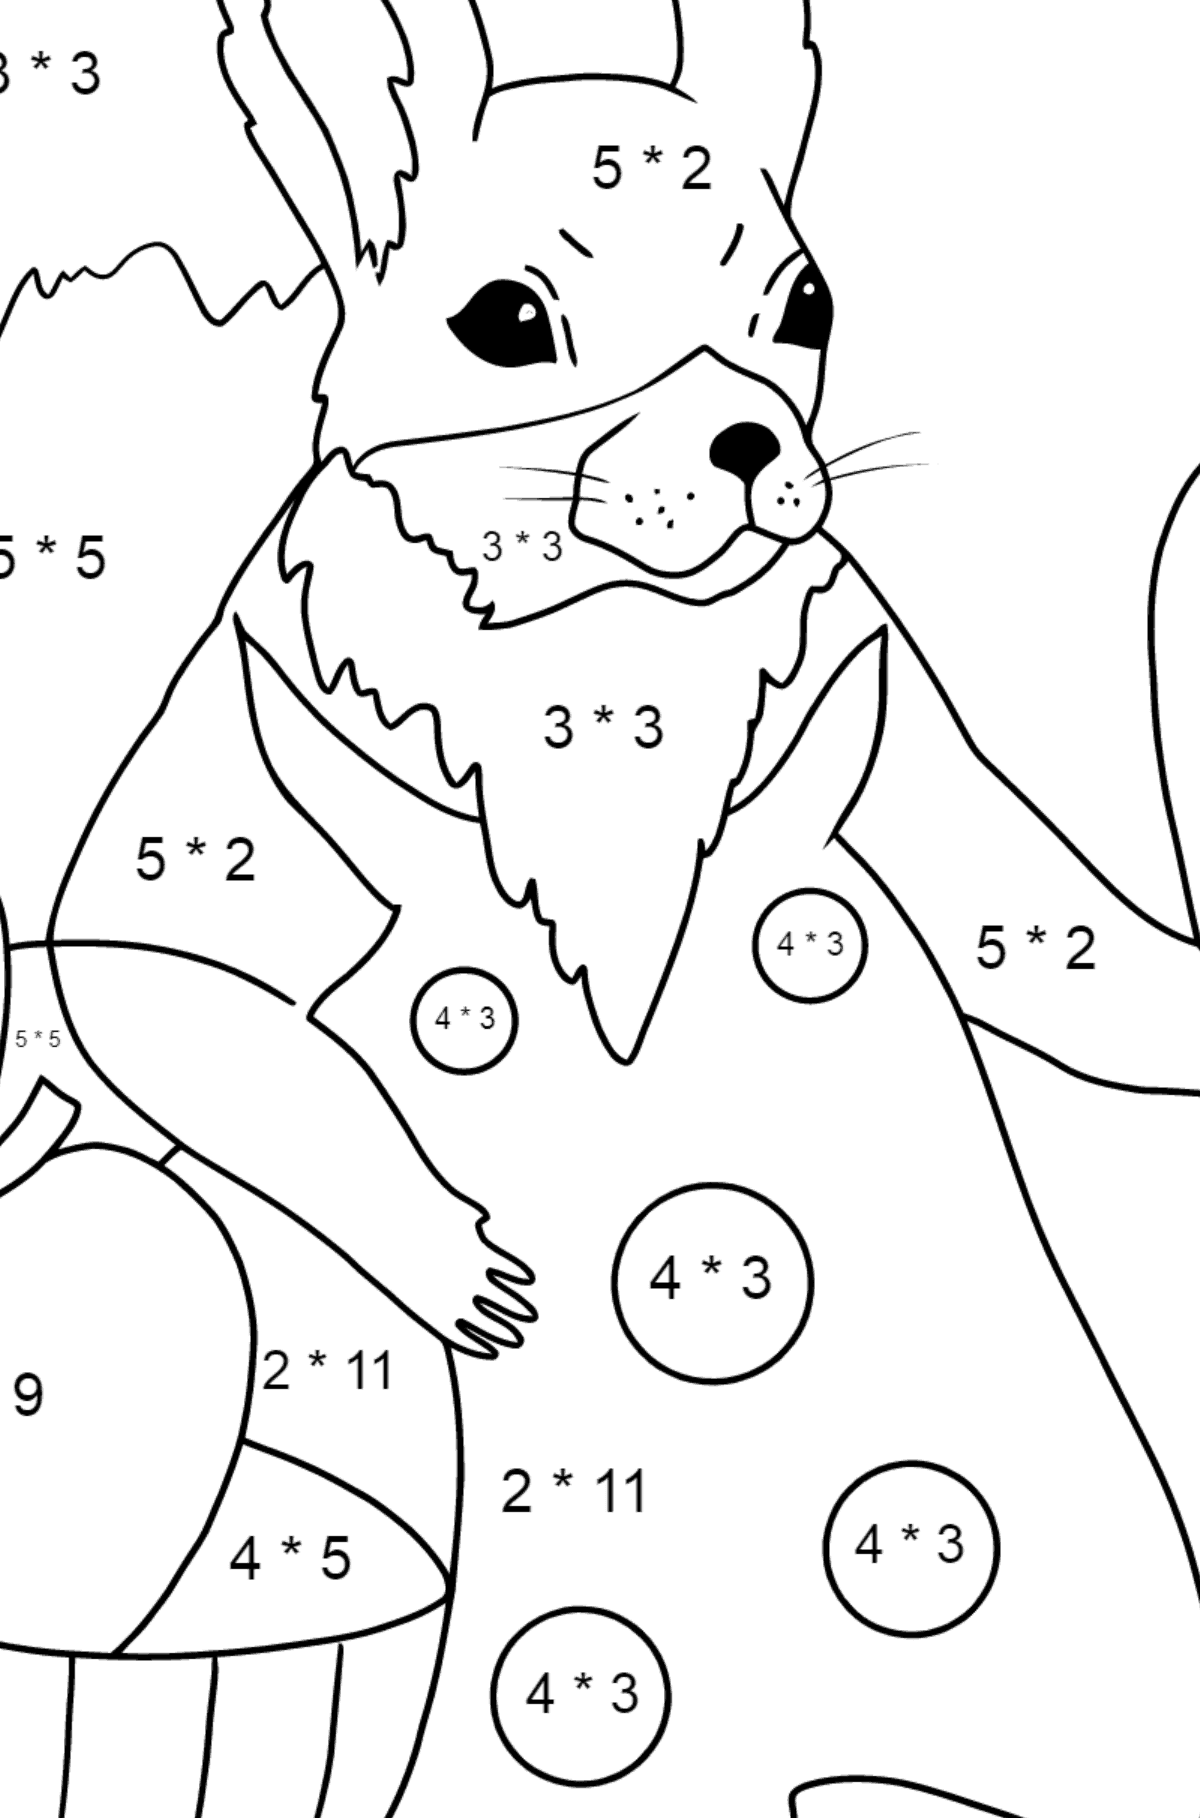 Sommerfärbung - Eichhörnchen - Mathe Ausmalbilder - Multiplikation für Kinder